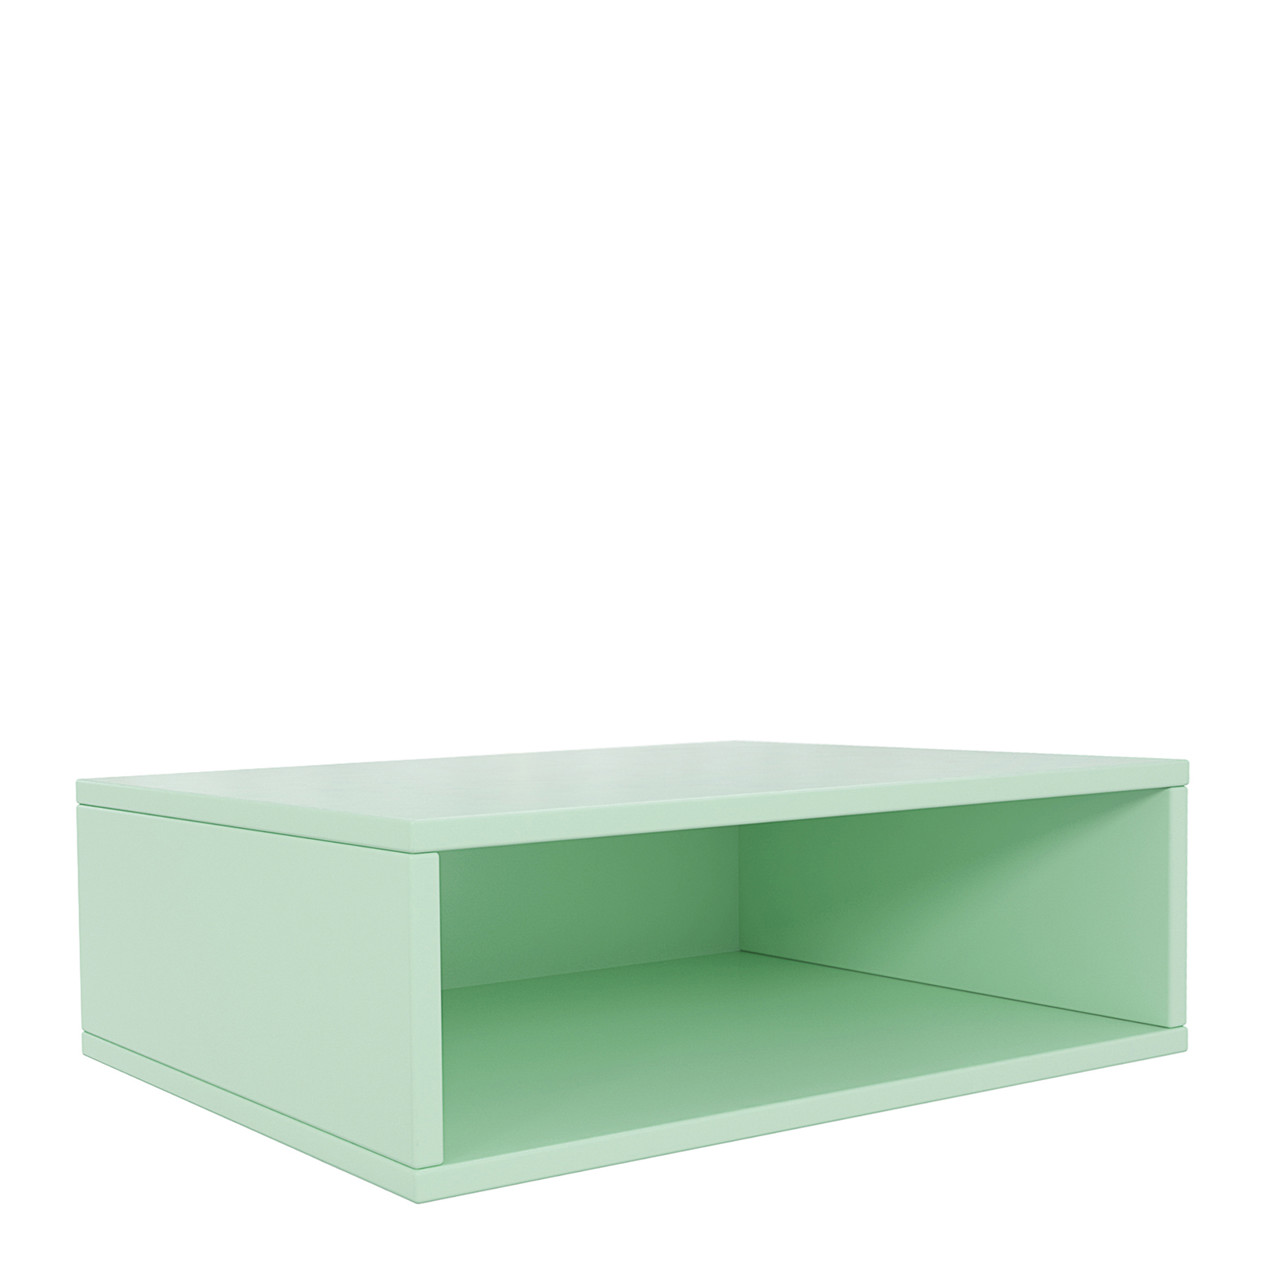 Furniture x Sinnerup BUILD IT UP modul g grøn